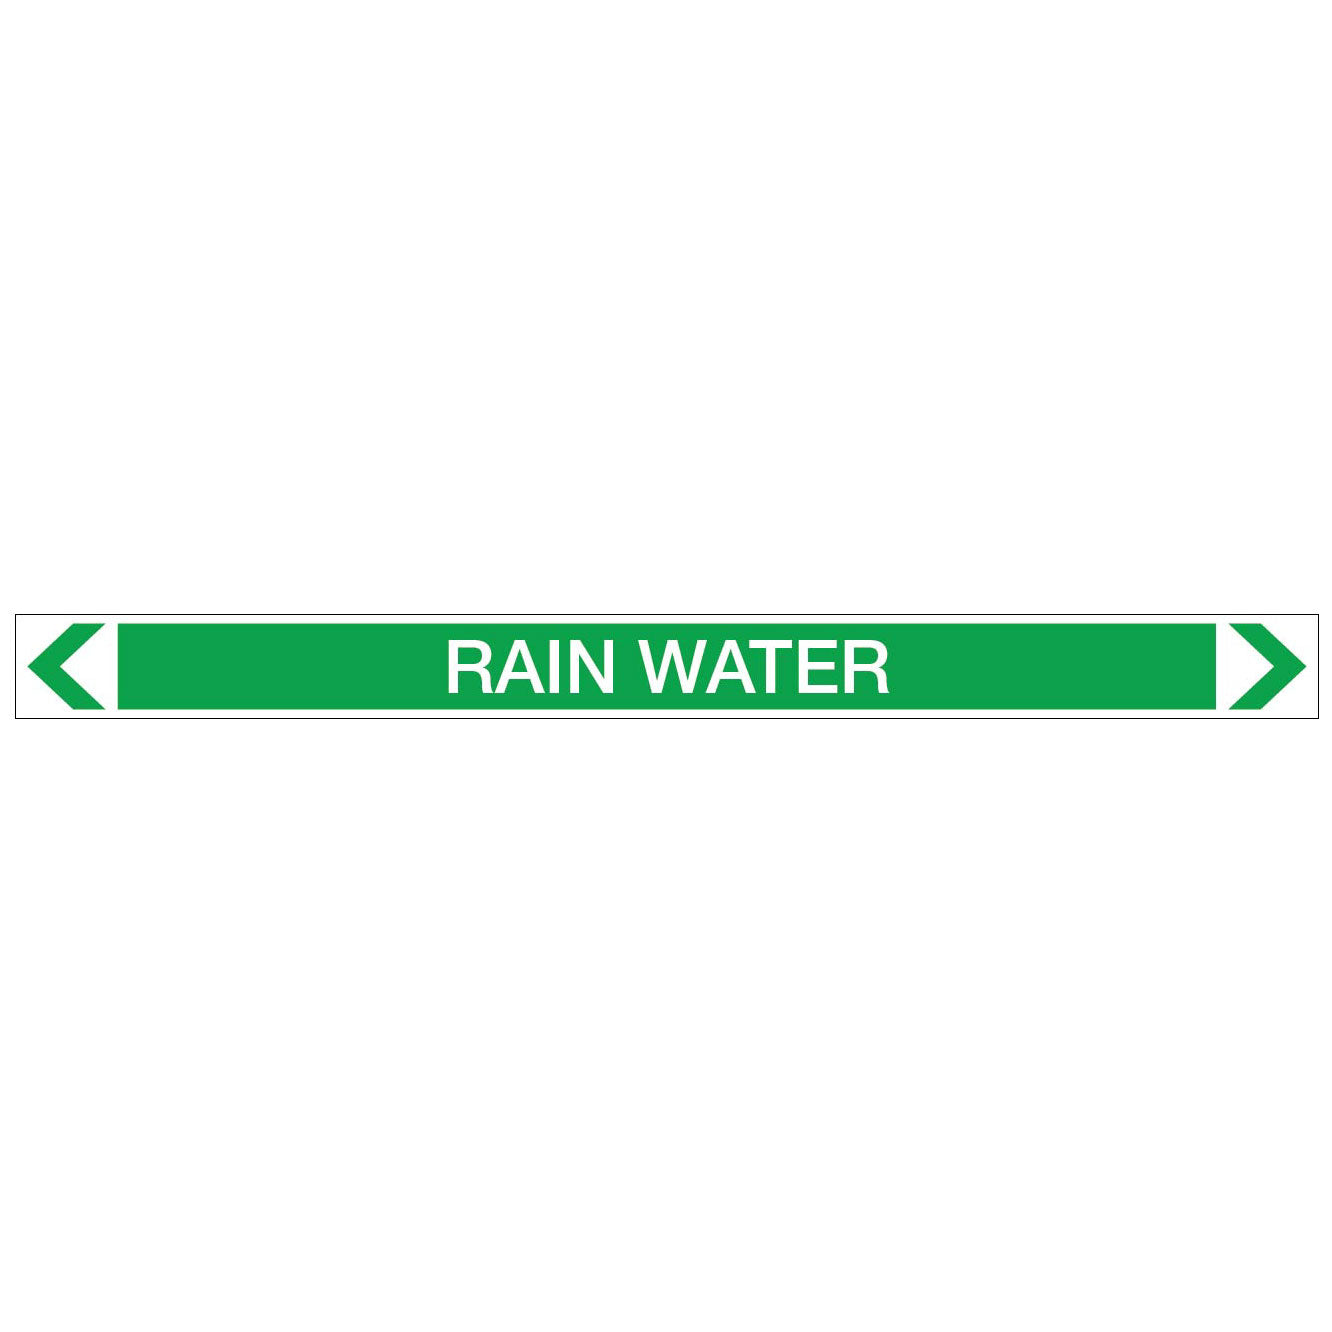 Water - Rain Water - Pipe Marker Sticker